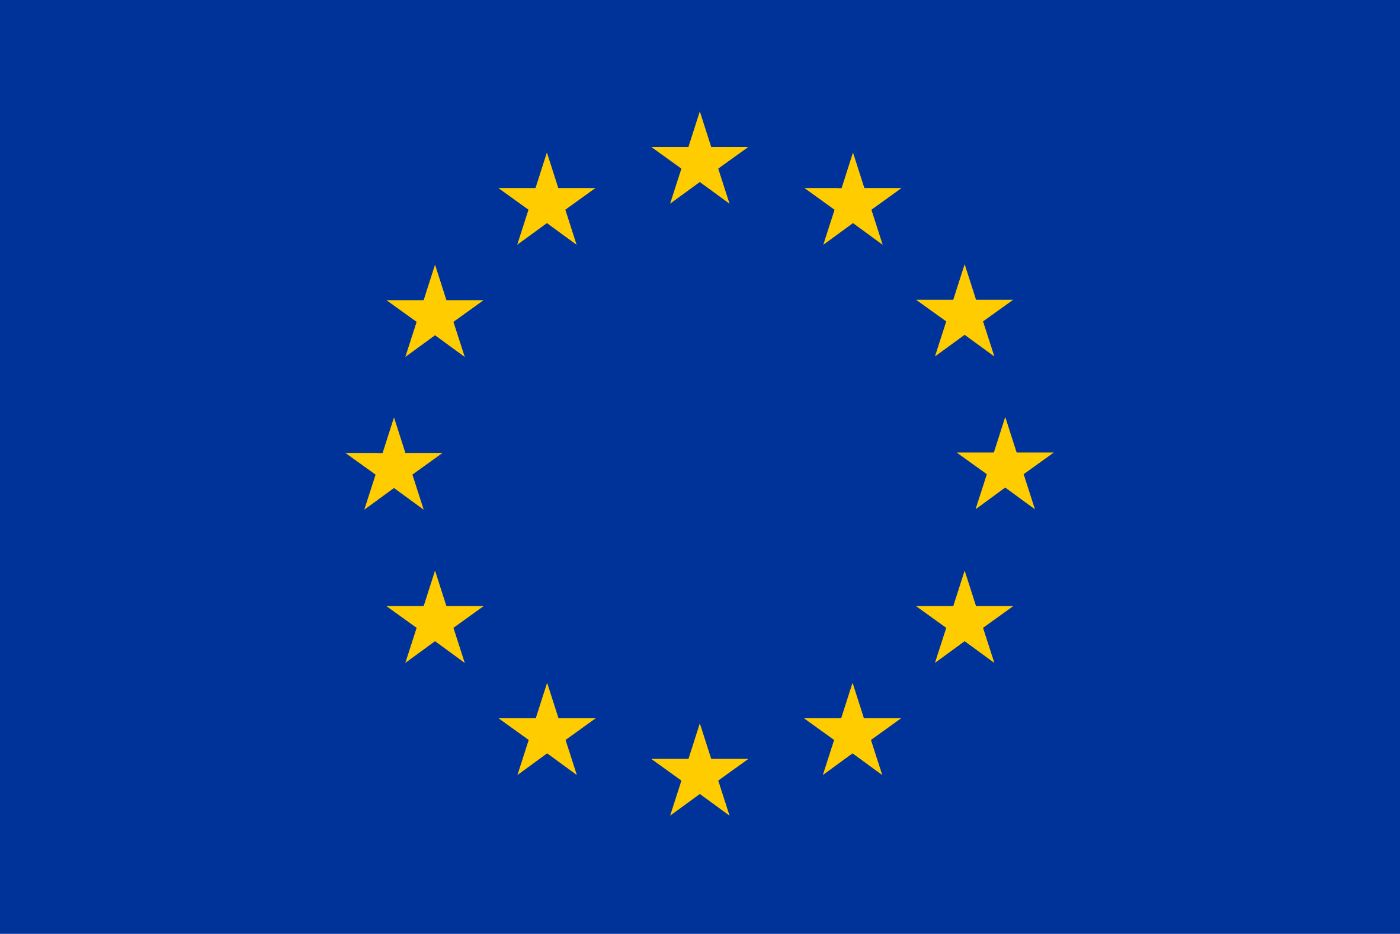 ​​​​​​​Die Flagge der Europäischen Union zeigt einen Kreis aus zwölf goldenen Sternen auf blauem Hintergrund. Die Sterne stehen für die Werte Einheit, Solidarität und Harmonie zwischen den Völkern Europas. Die Zahl der Sterne hat nichts mit der Anzahl der Mitgliedsländer zu tun. Der Kreis ist ein Symbol für die Einheit.